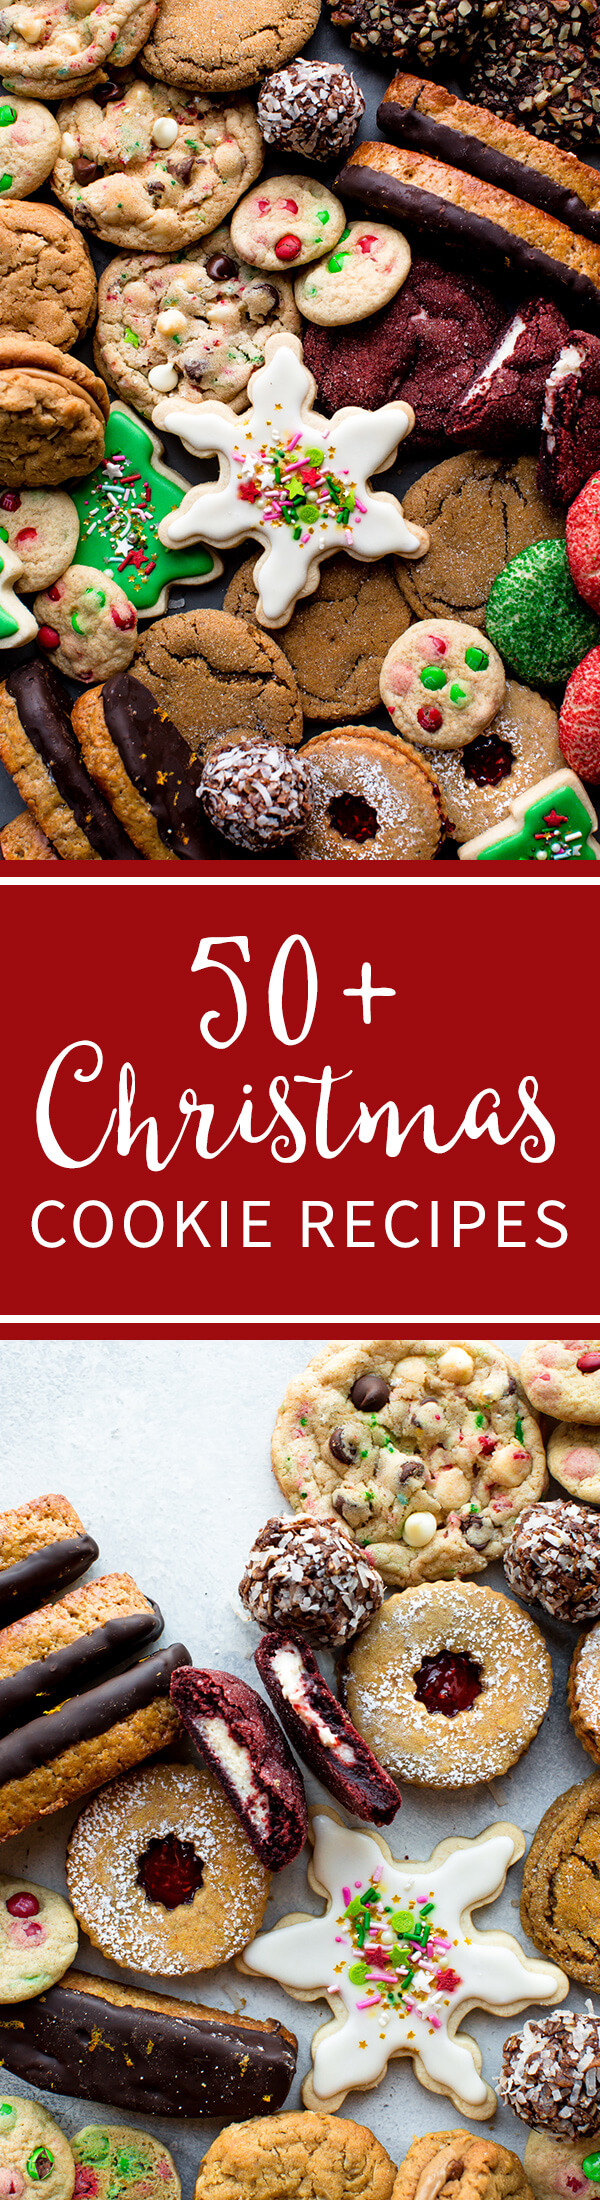 50 recettes de biscuits de Noël, y compris des biscuits au sucre décorés, des biscotti, des biscuits linzer, des biscuits sans cuisson, des biscuits au beurre d'arachide, des biscuits au velours rouge, des biscuits au chocolat, des biscuits boule de neige, des biscuits à la mélasse et plus encore !! Recettes de cookies sur sallysbakingaddiction.com